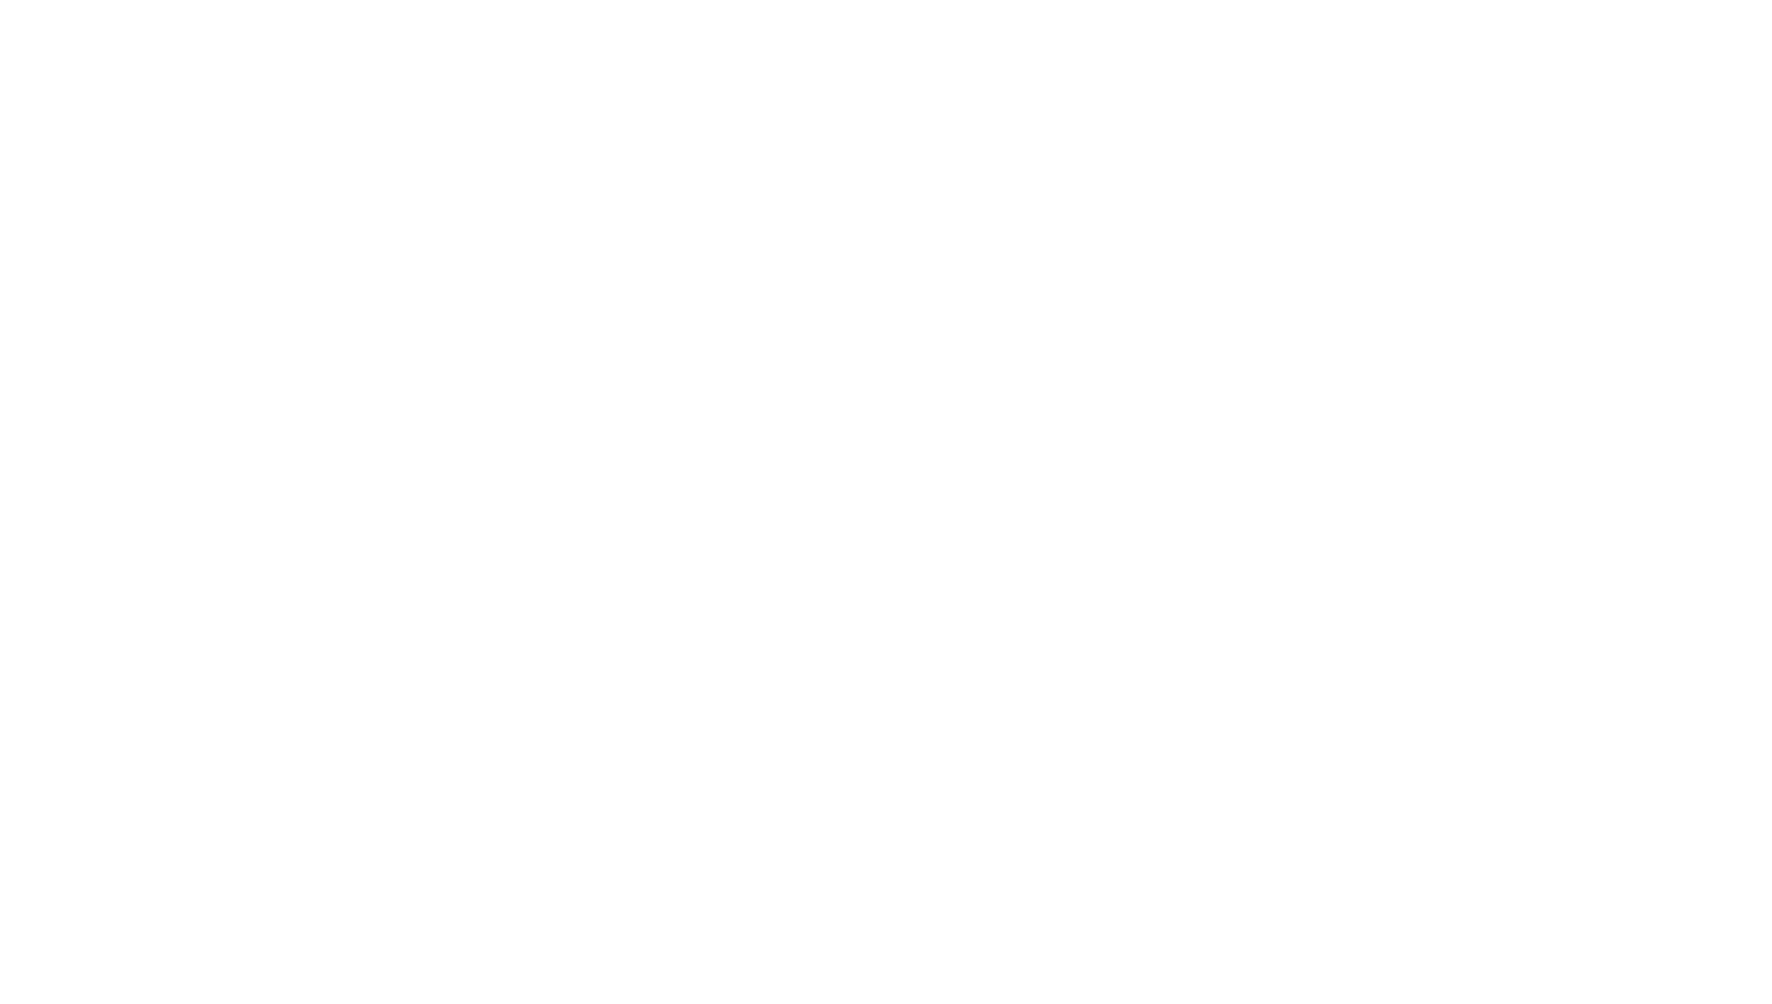 Jessica Clarén